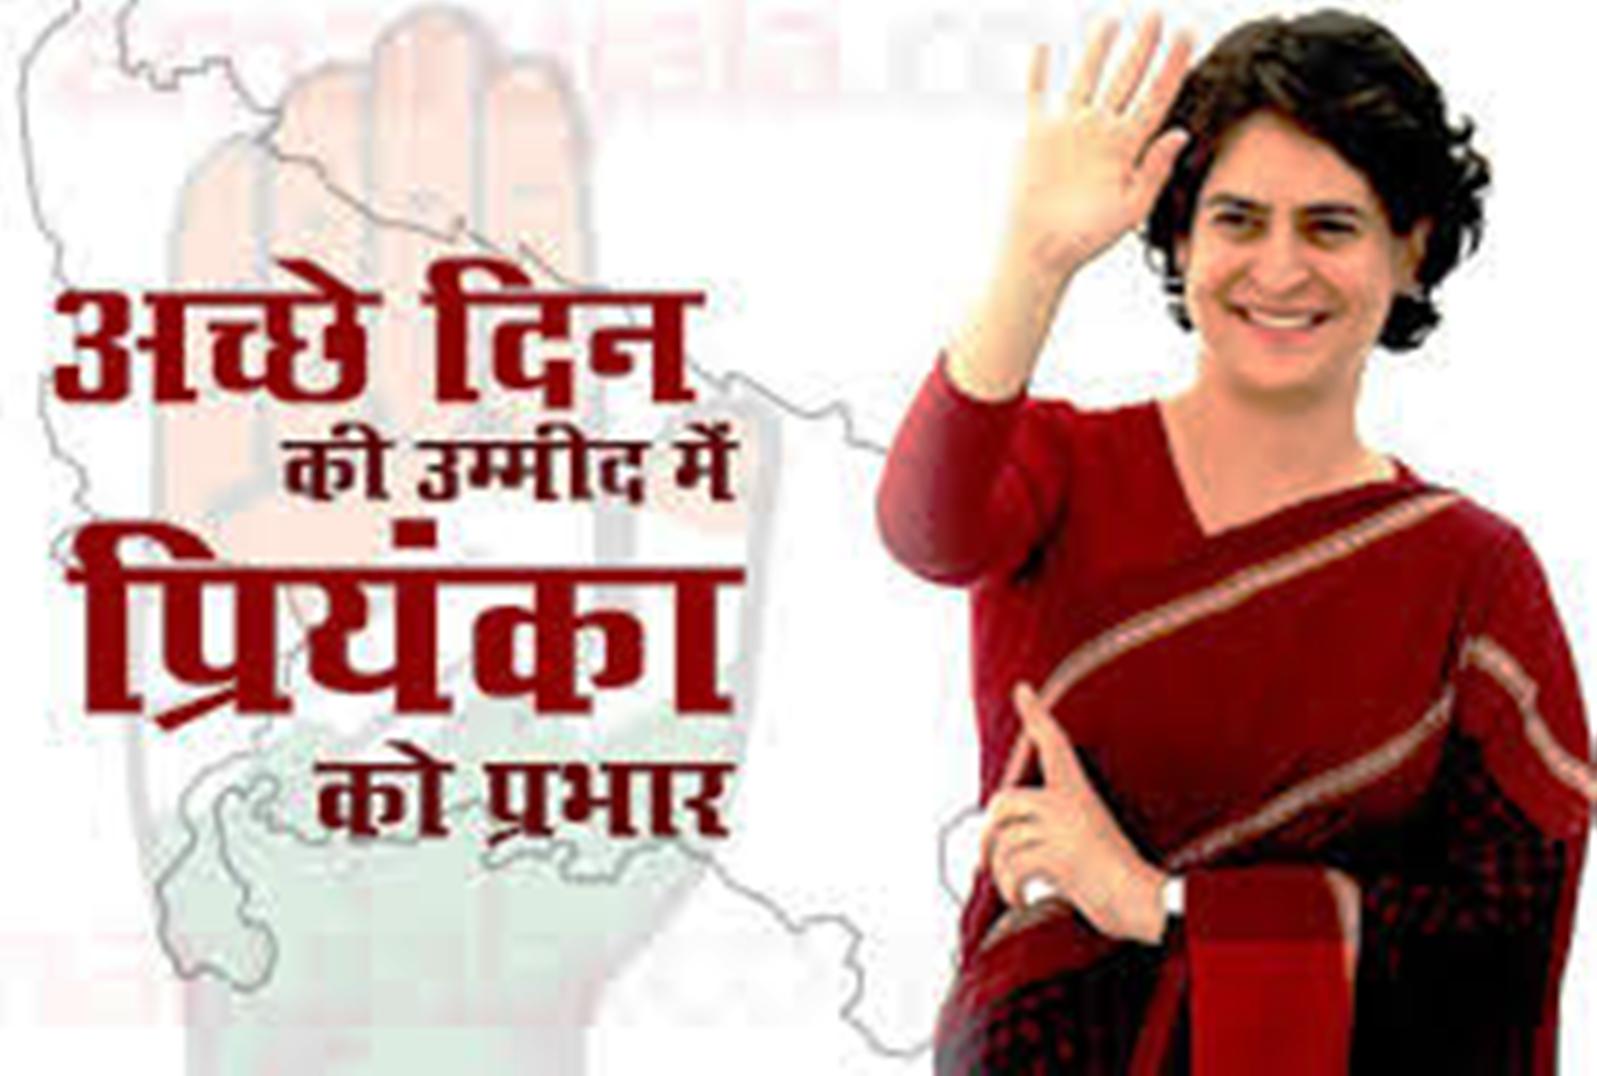 Congress leader priyanka gandhi plan to win lok sabha elections 2019